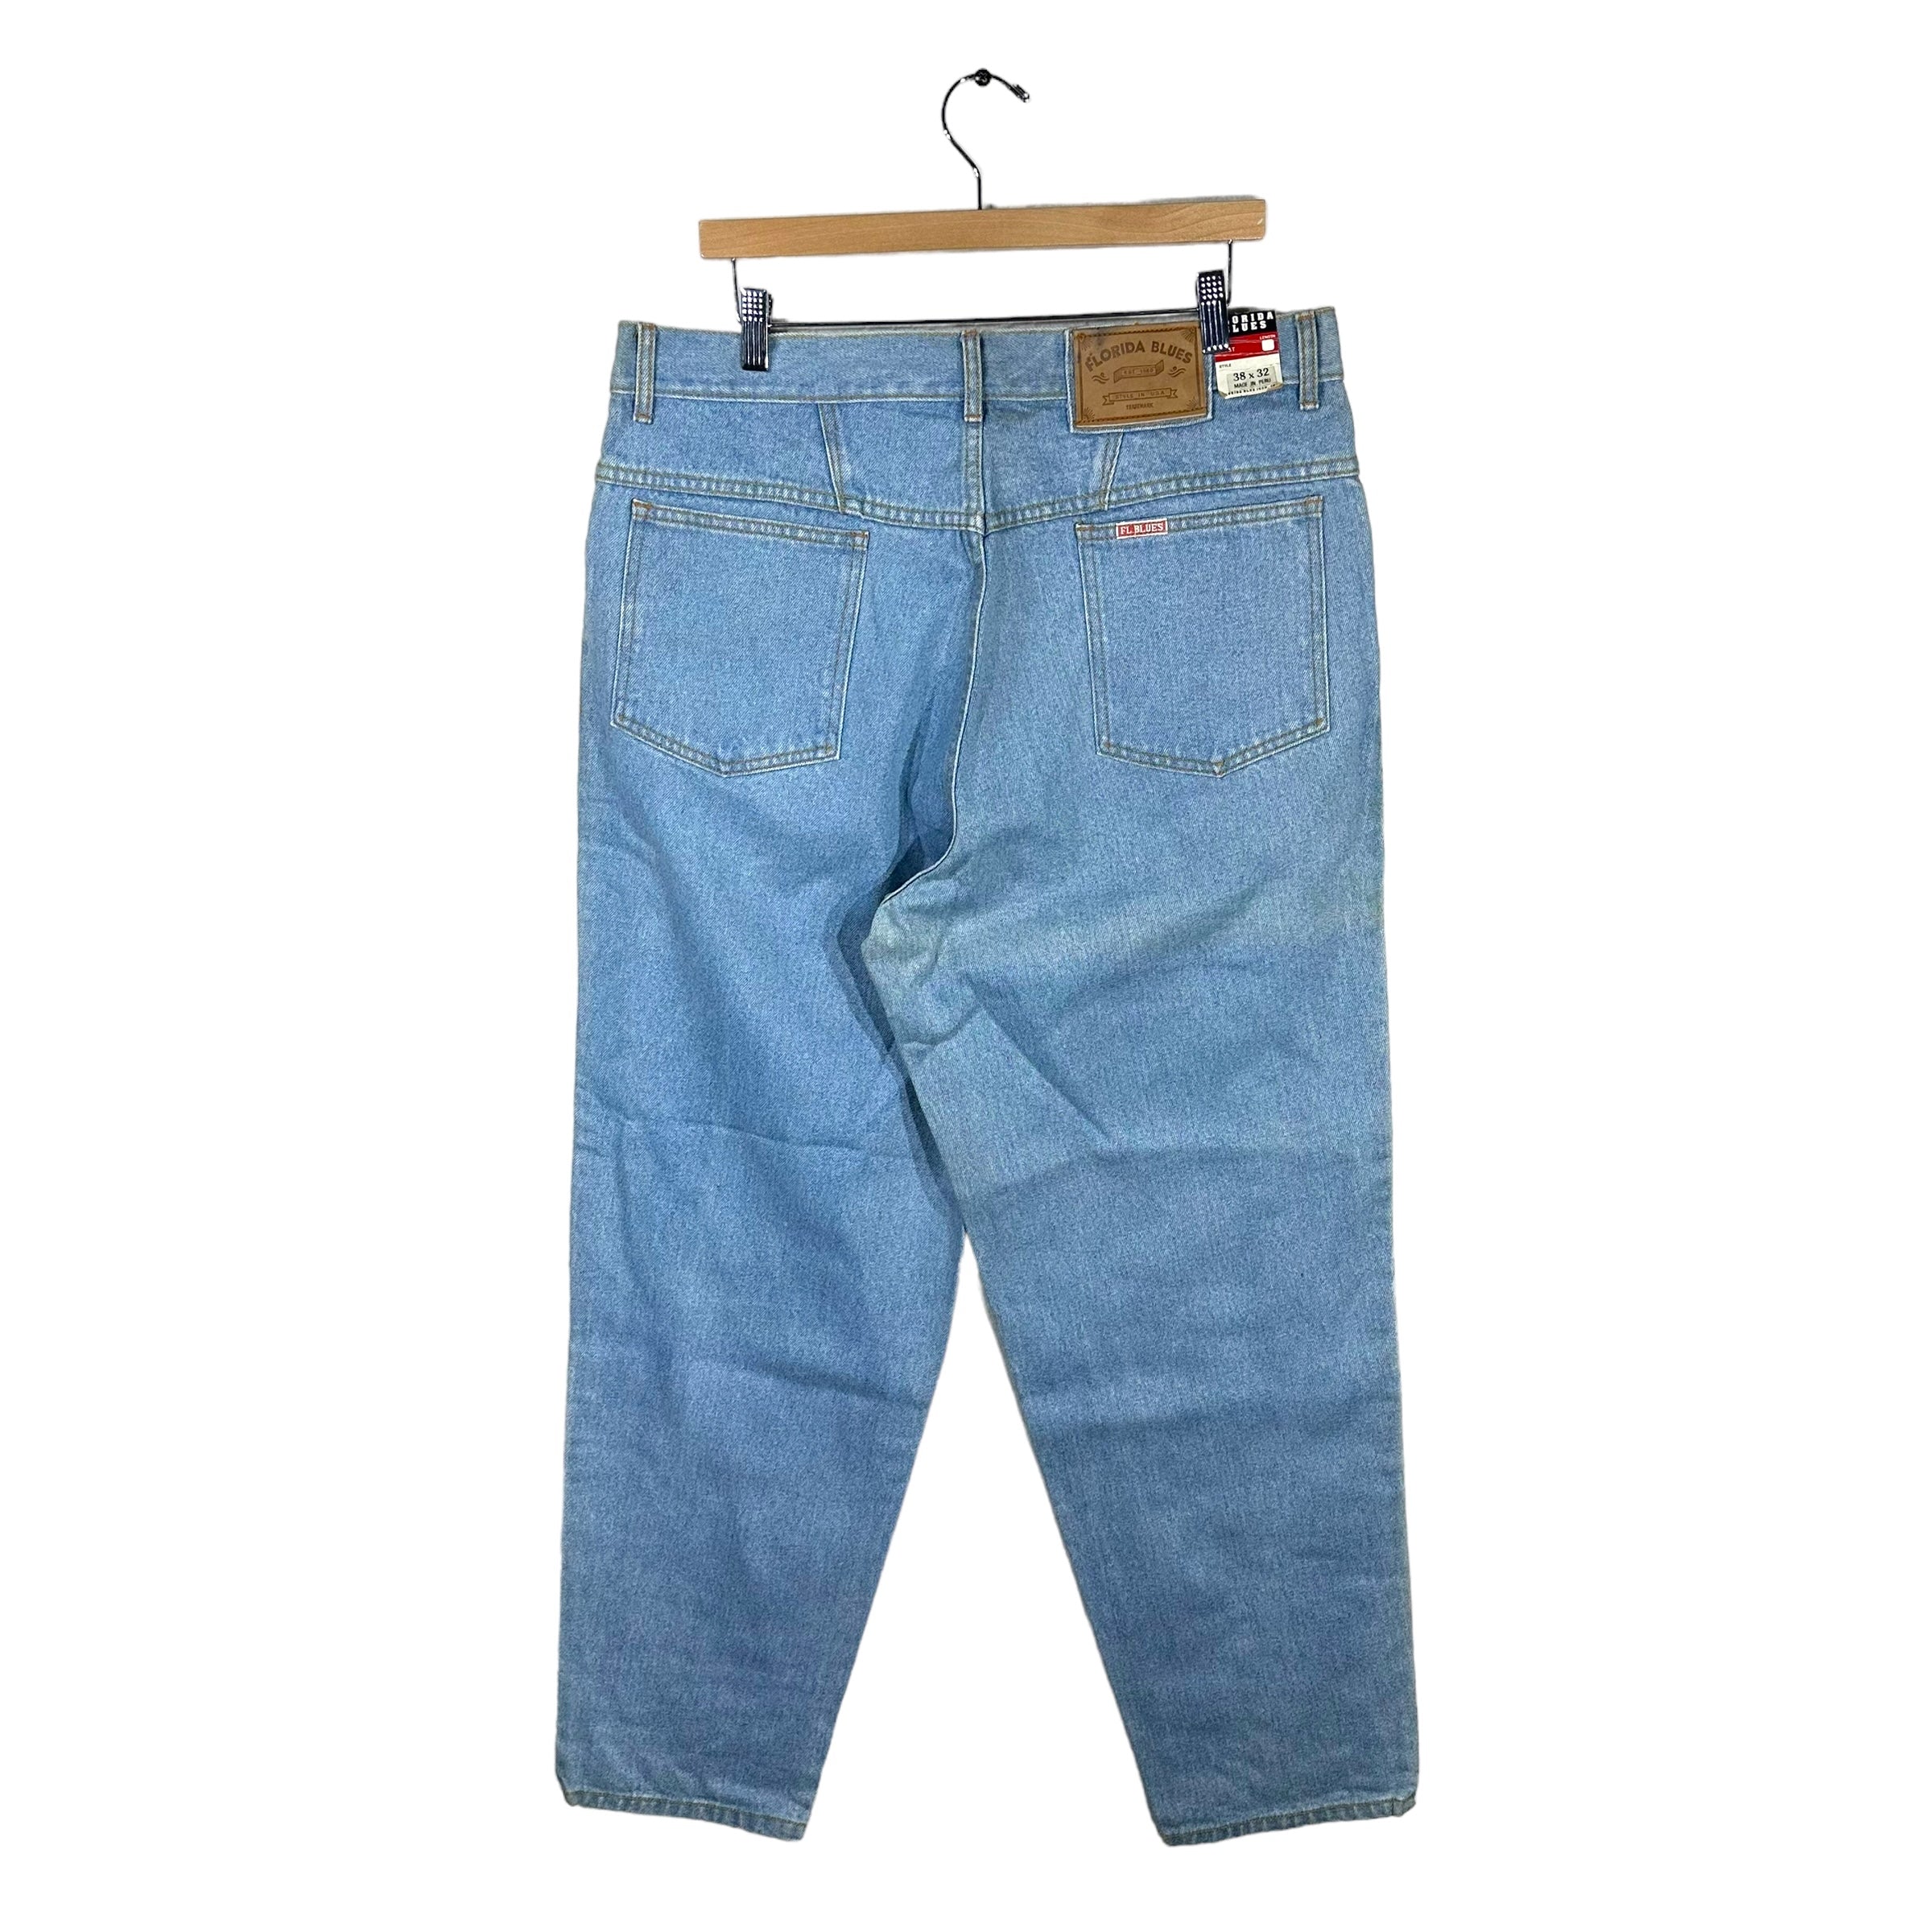 Vintage Florida Blues Jeans